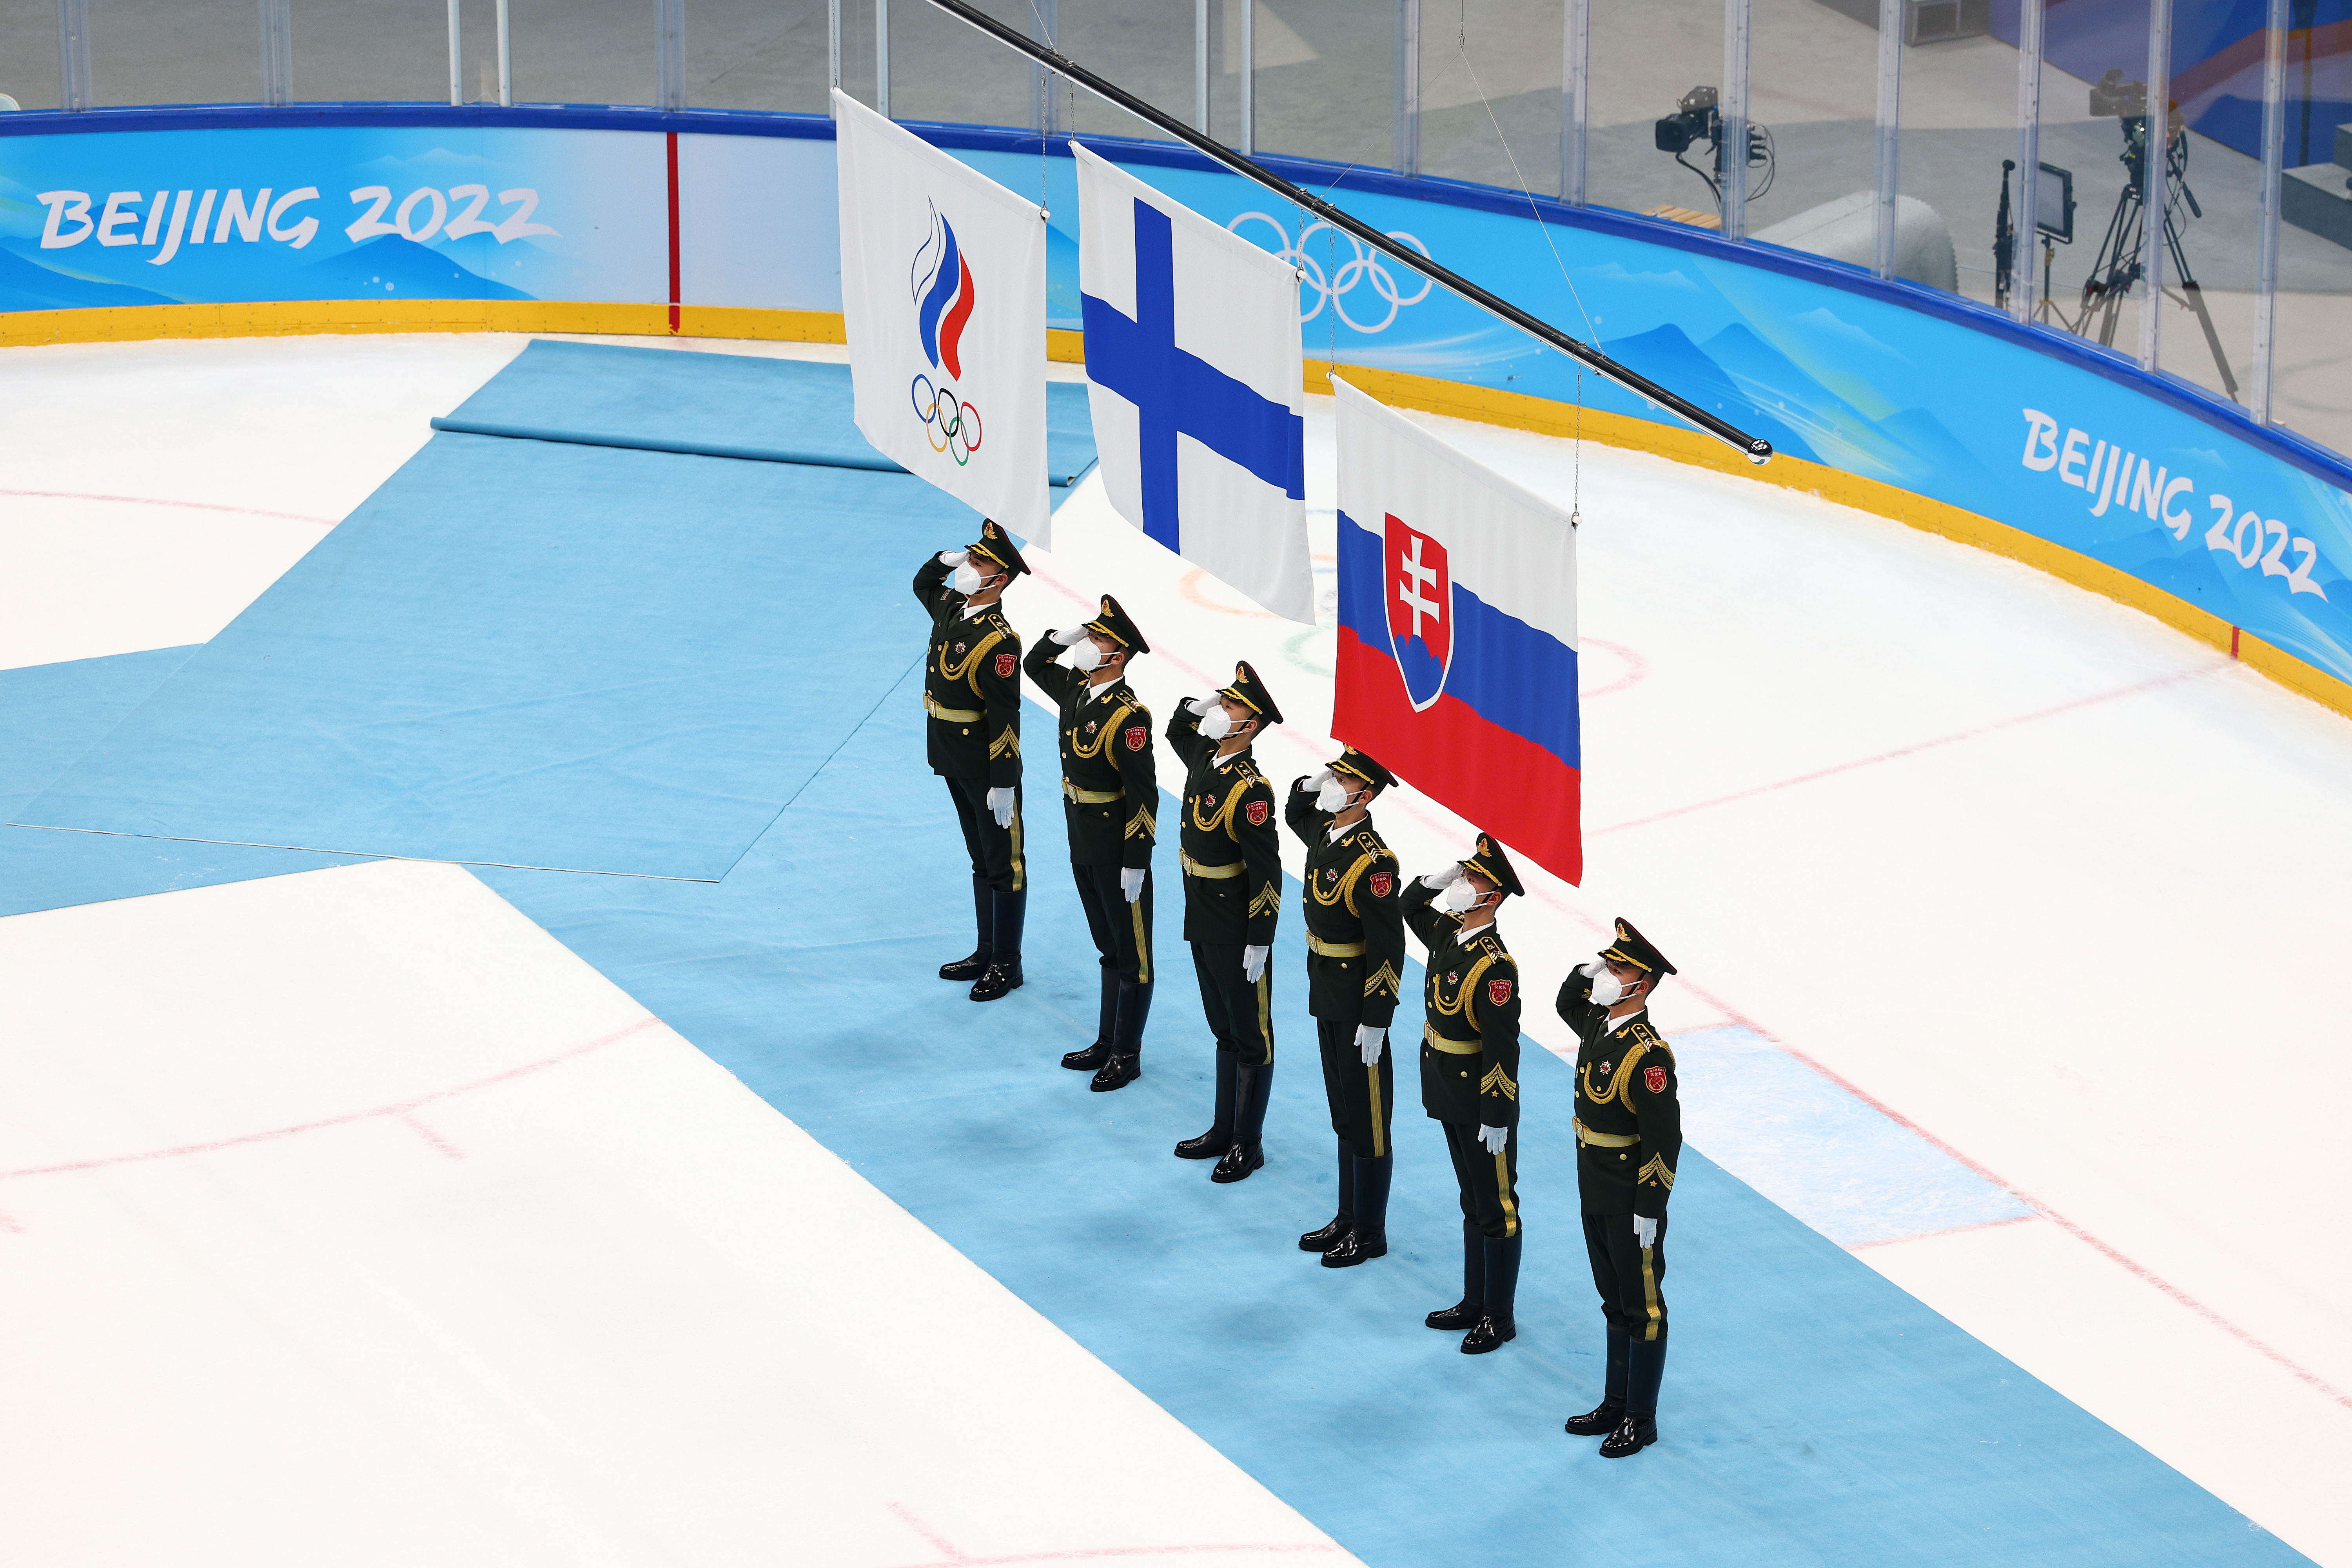 Încă o sancțiune dură după războiul declanșat de Vladimir Putin. Sportivii ruși nu ar mai putea participa la competițiile internaționale